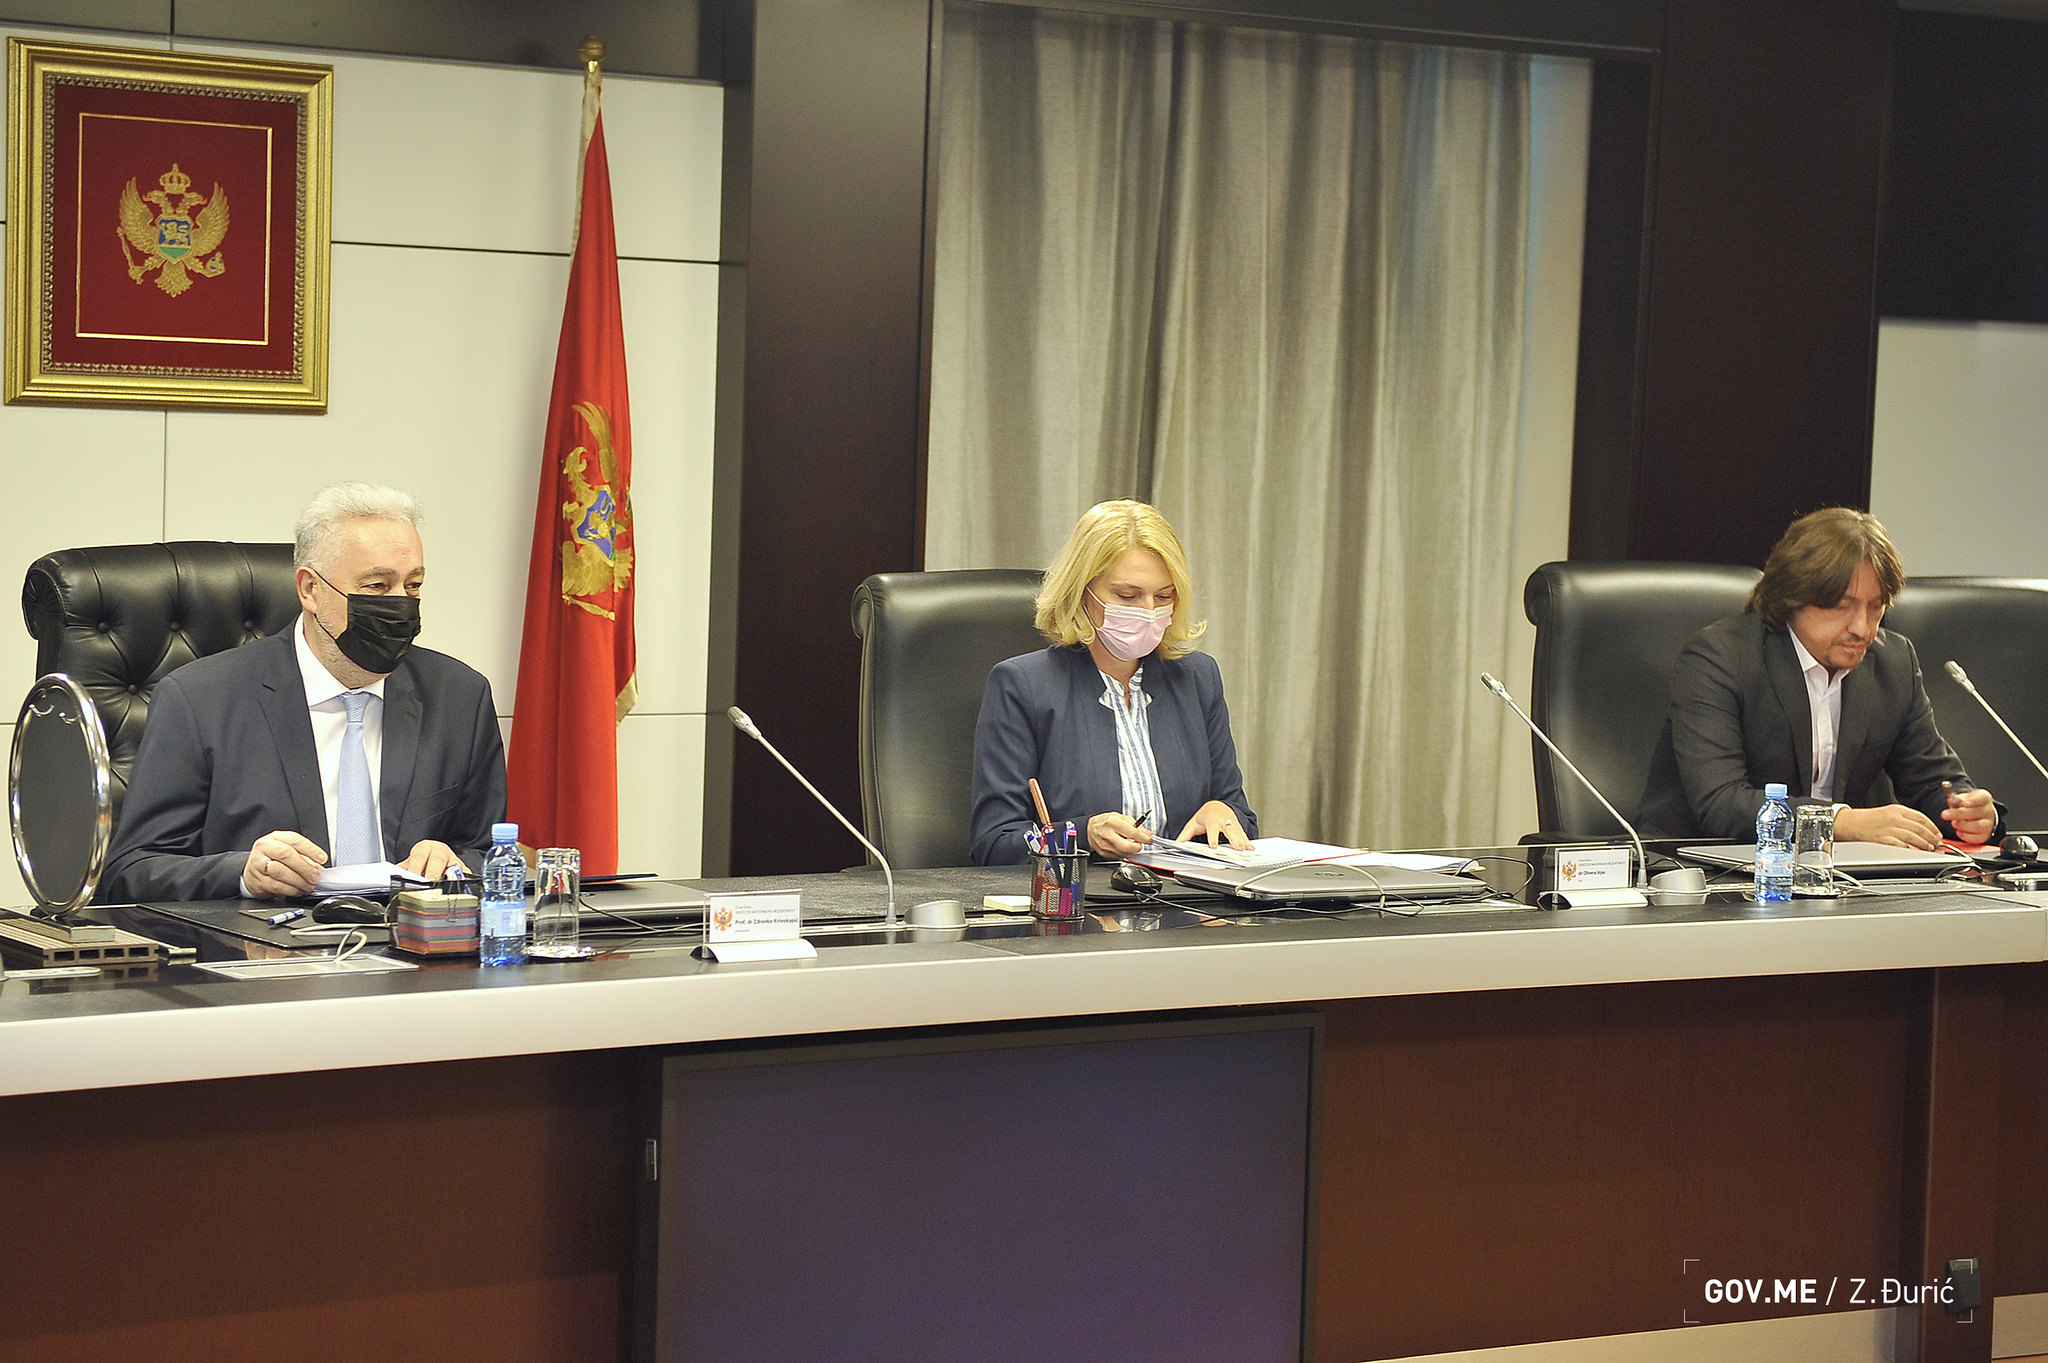 Završena sjednica Vijeća, Abazović i Radulović bili odsutni